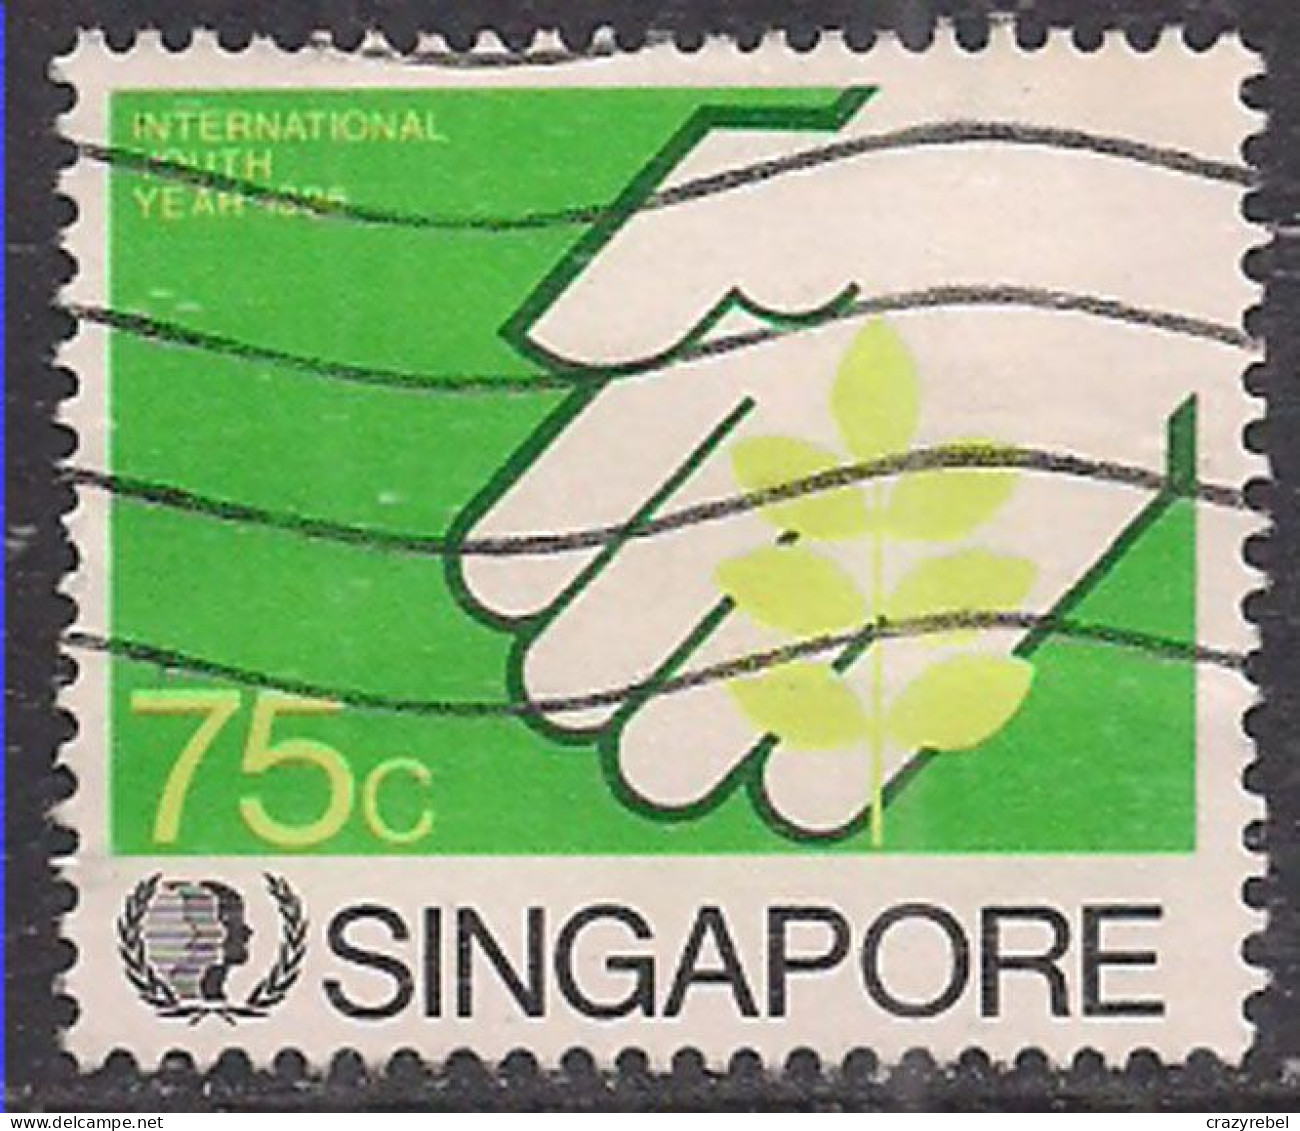 Singapore 1985 QE2 75c International Youth Year SG 517 Used ( B279 ) - Singapore (...-1959)